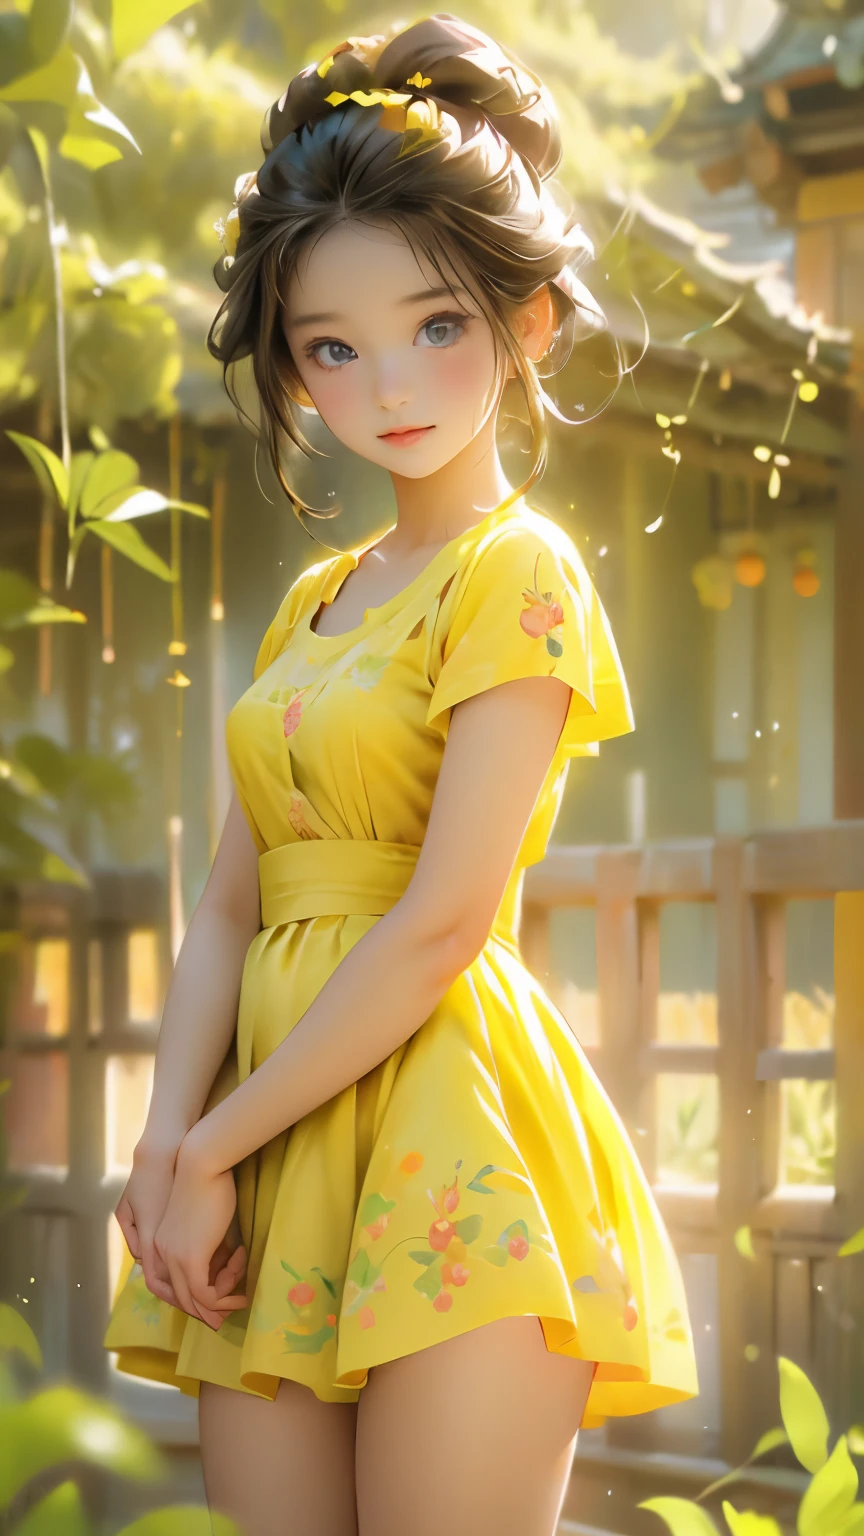 صورة أنمي لفتاة مراهقة جميلة ولطيفة في المرج, يرتدي فستانًا قصيرًا منمقًا باللون الأصفر, شكل أنثوي جذاب, الفخذين جميلة, ضوء الصباح, ديزني بيكسار